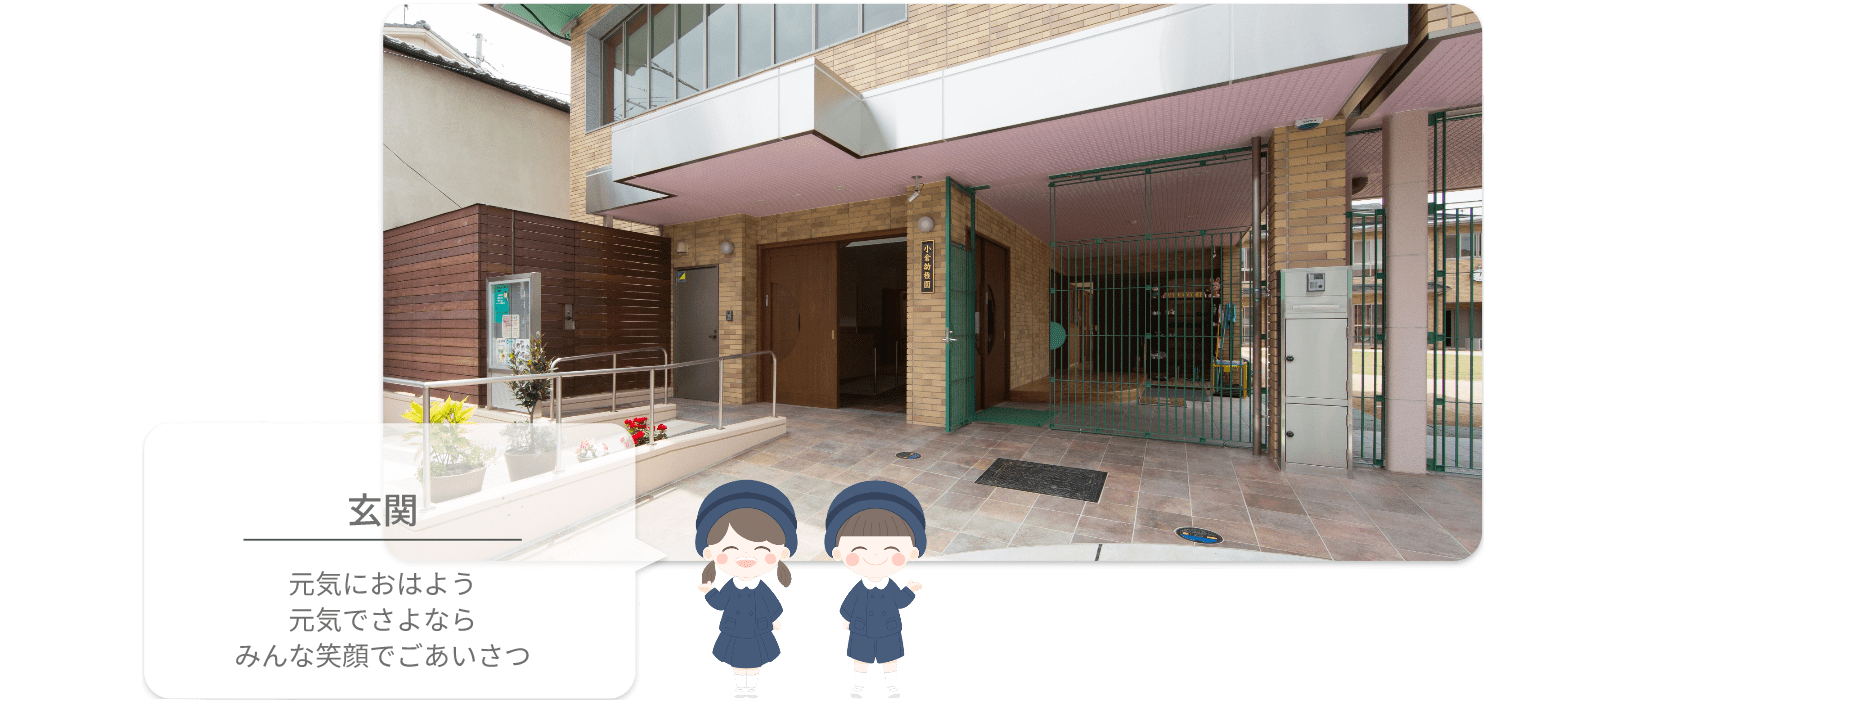 小倉幼稚園 玄関